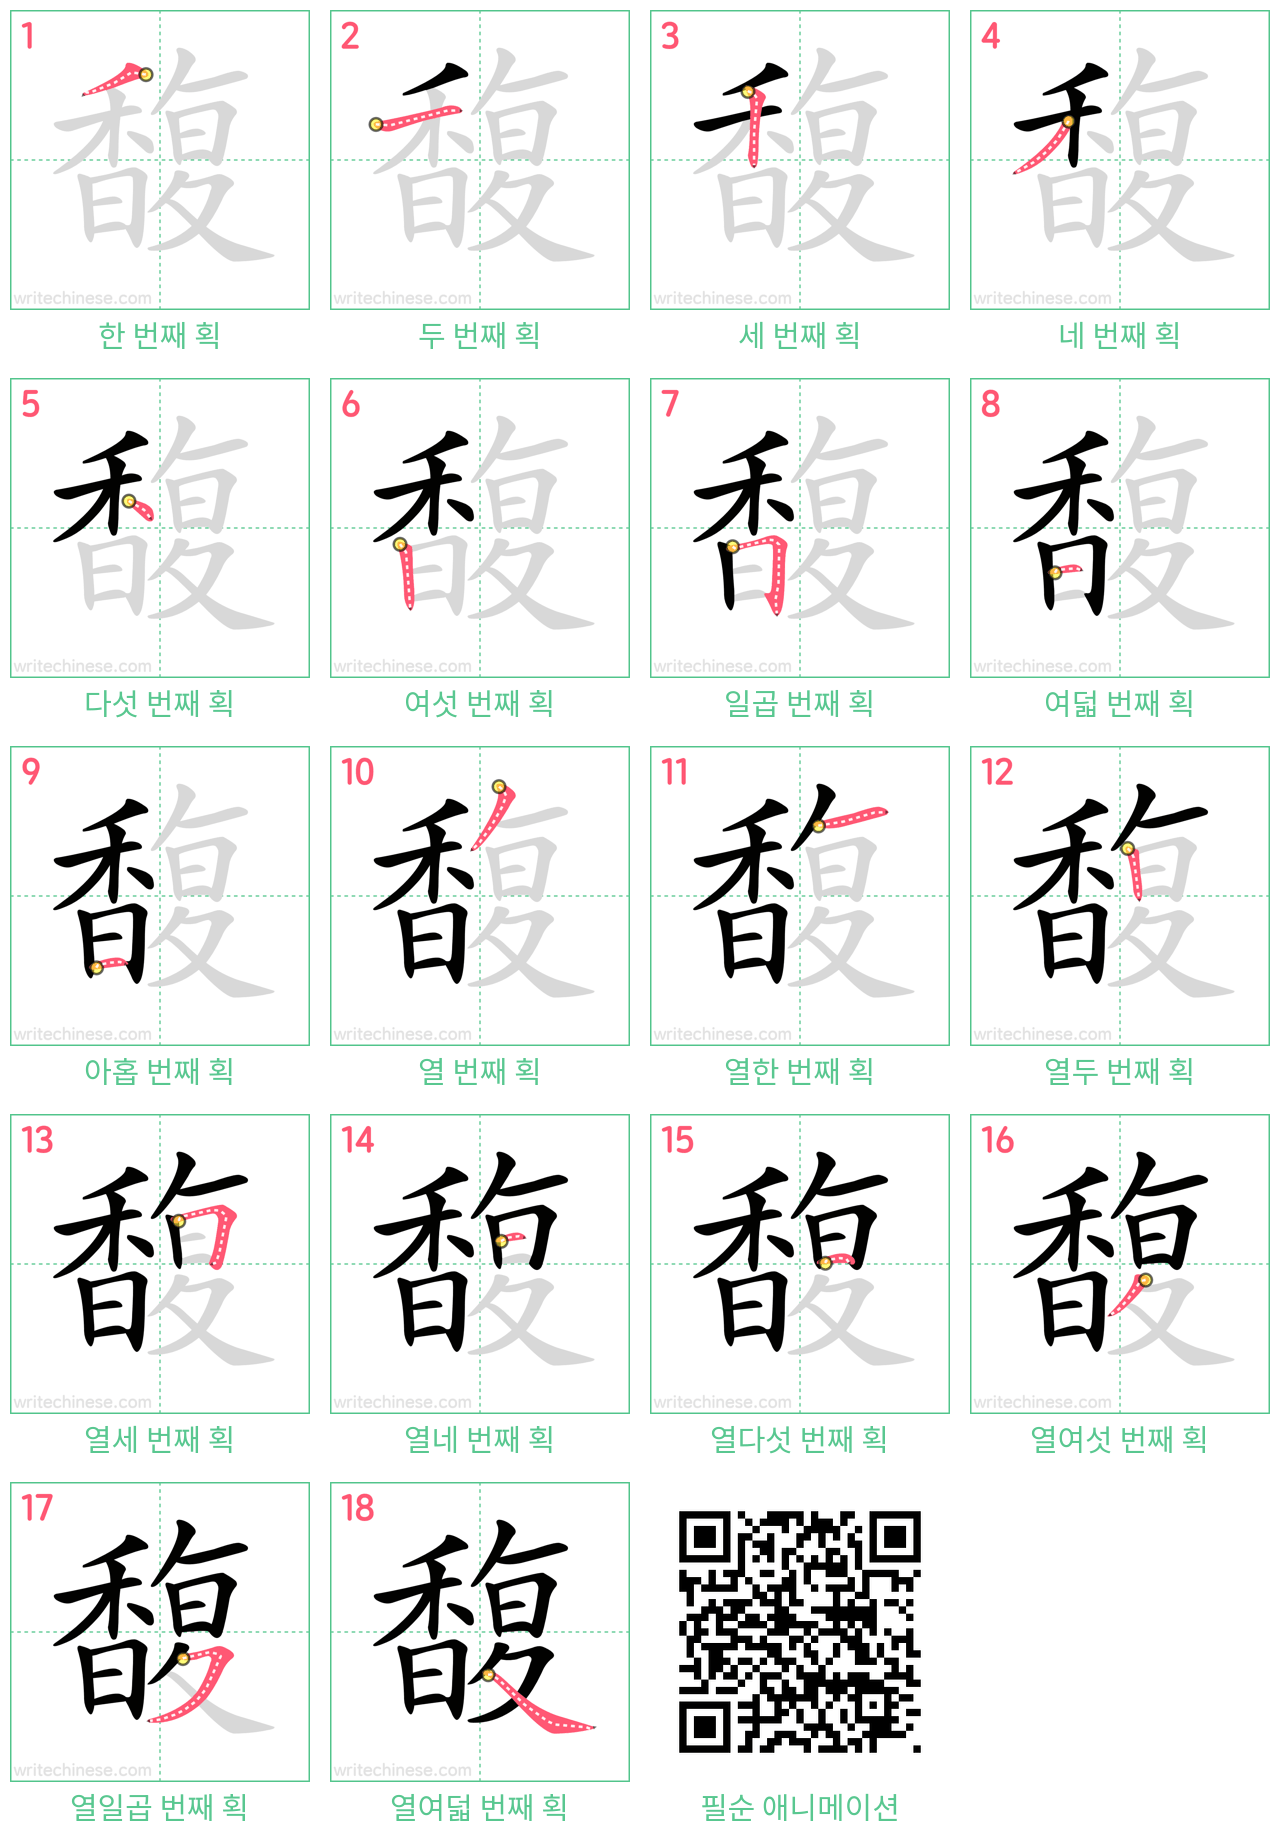 馥 step-by-step stroke order diagrams